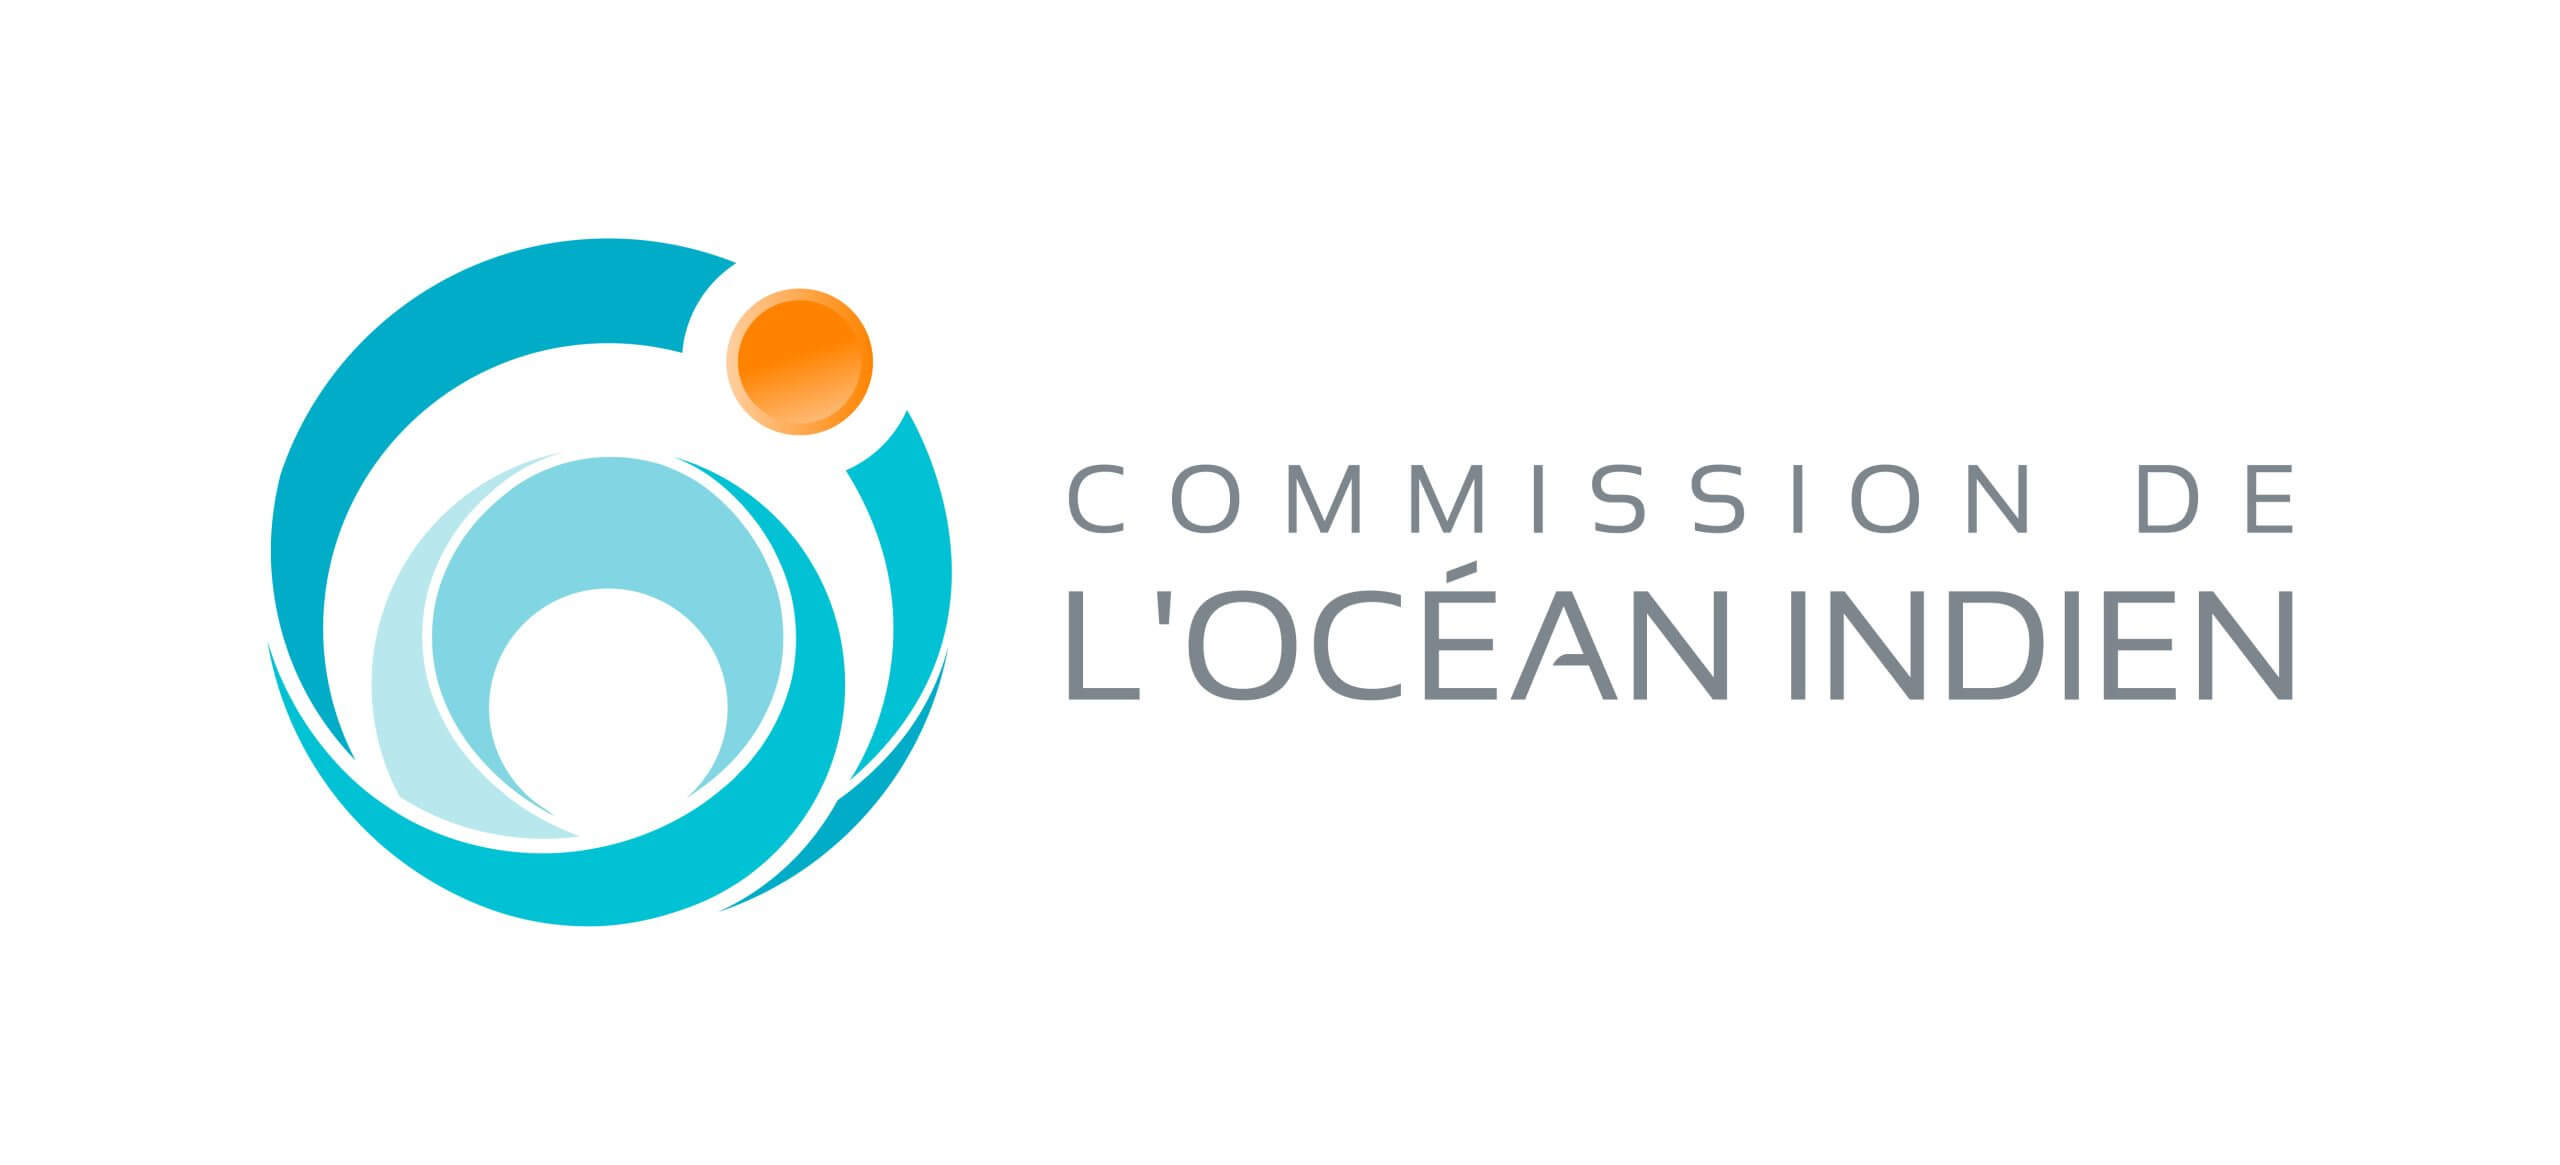 COI-Logo-Jpeg-Landscape-scaled